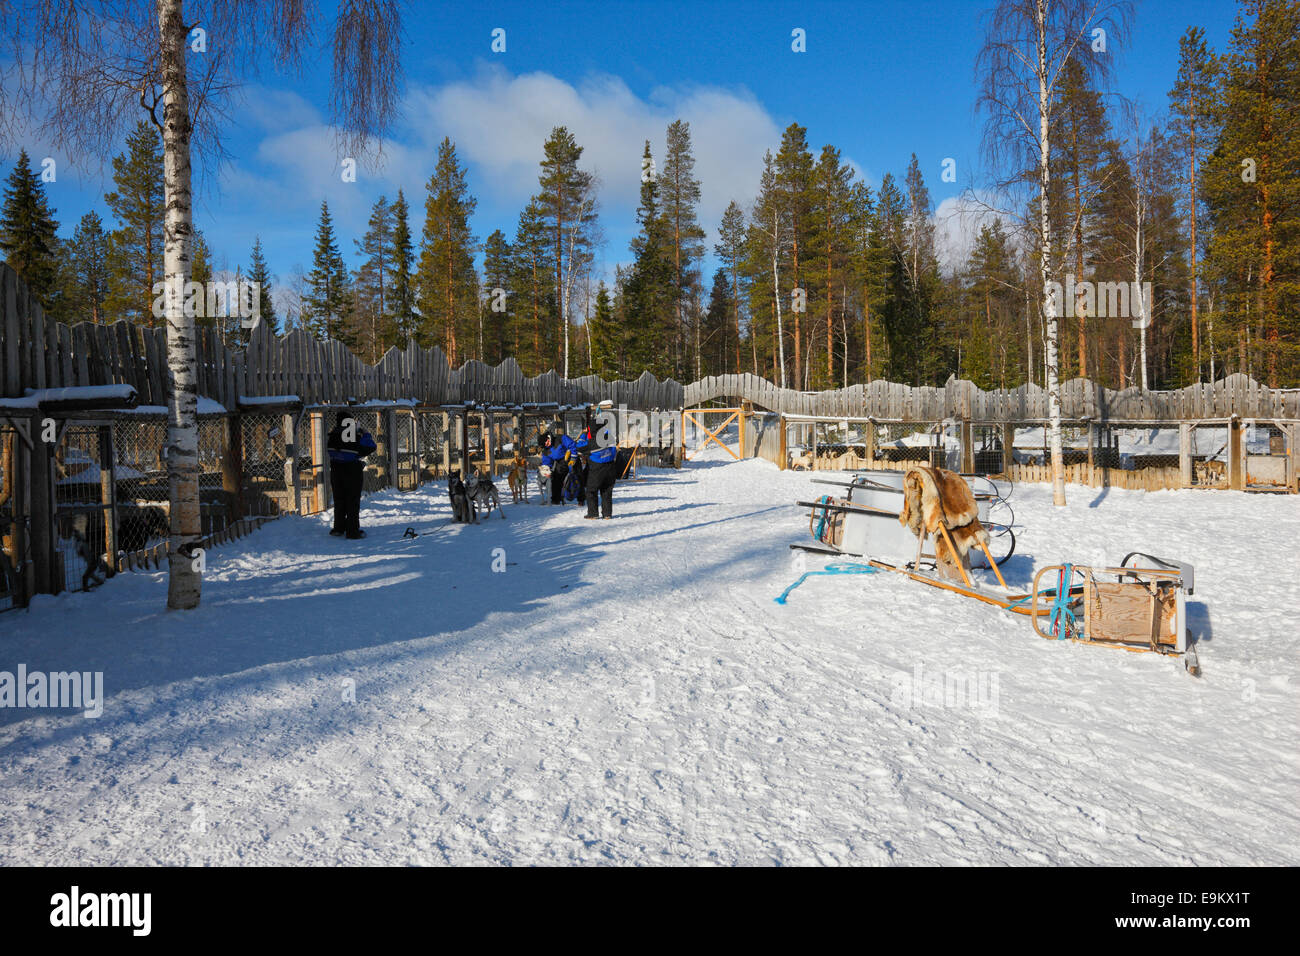 Huski farm - Kopara, Lapland Finland Stock Photo